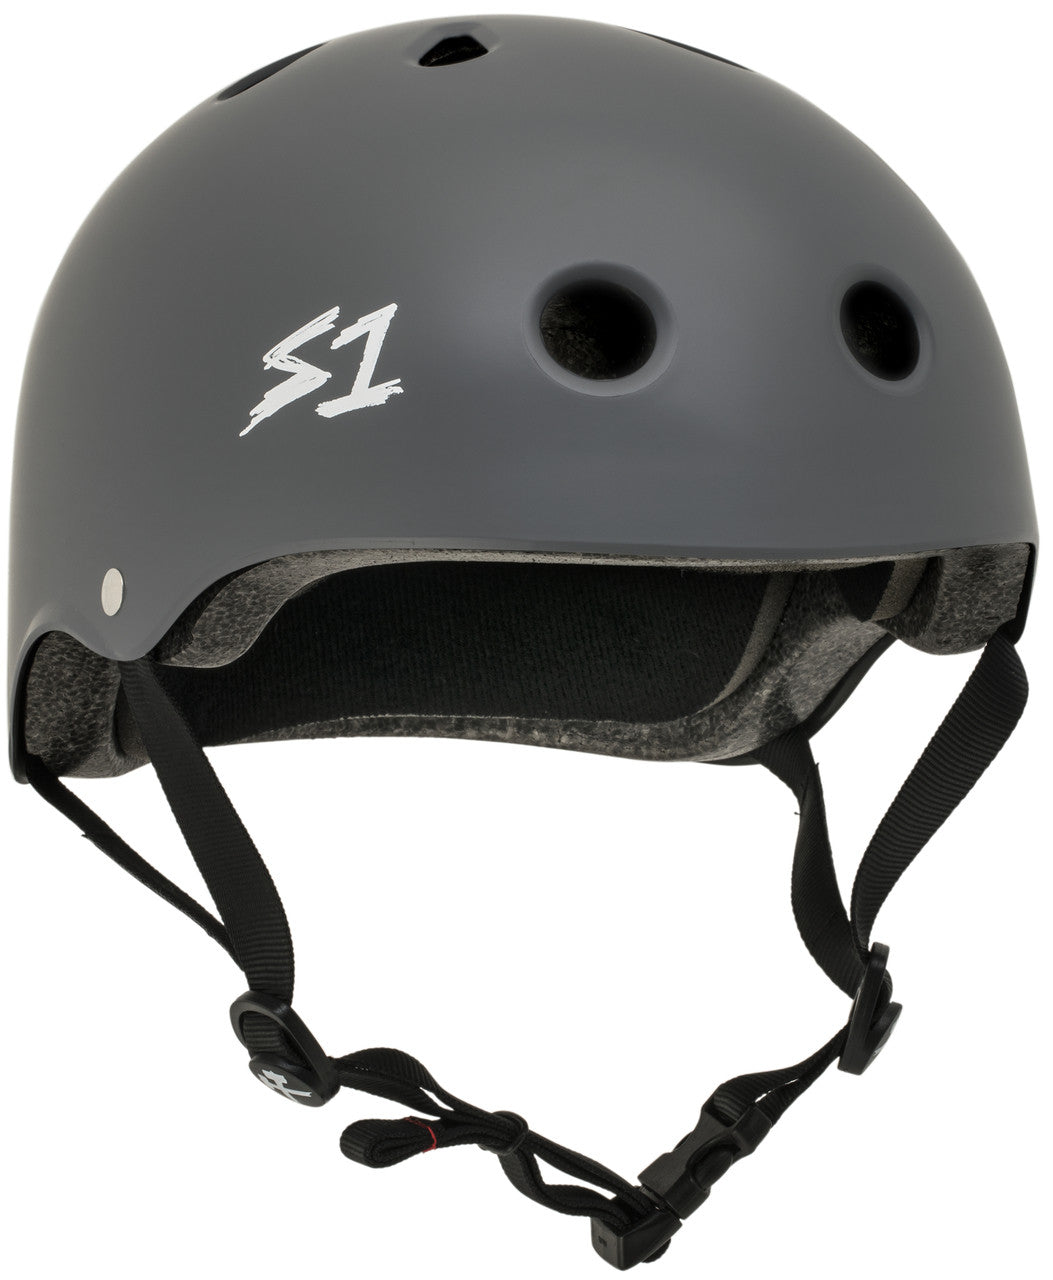 S1 Lifer Helmet in Matte Grey